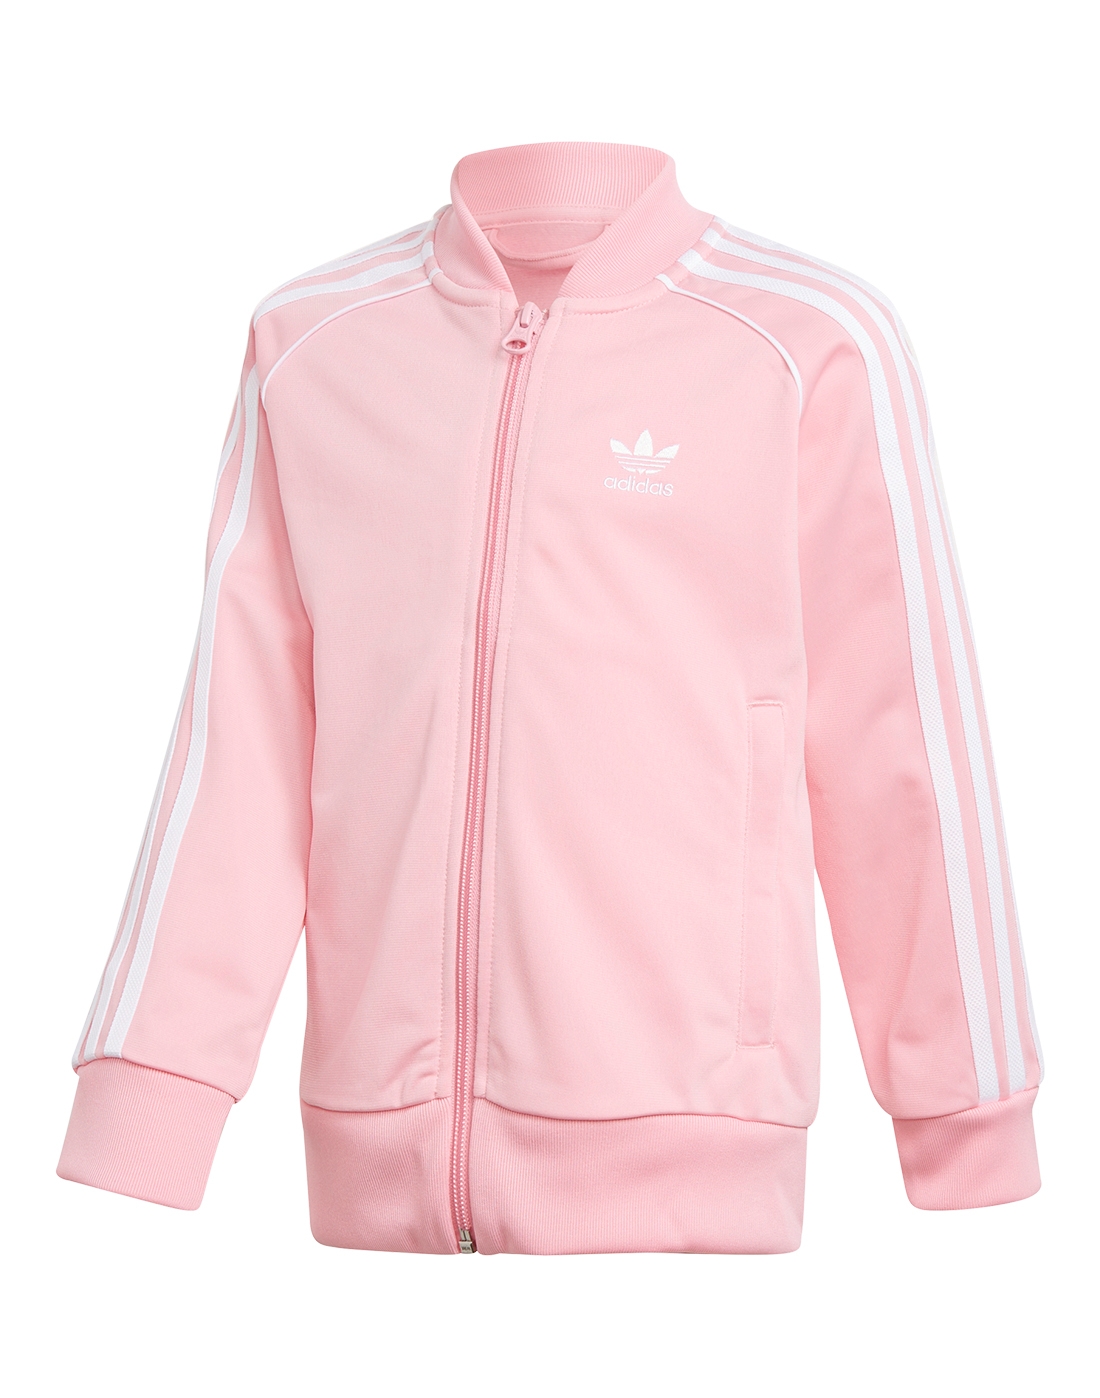 Розово коричневый адидас. Розовый костюм адидас Ориджиналс. Adidas Originals Pink Tracksuit. Спортивный костюм адидас розовый. Розовый спортивный костюм мужской адидас.